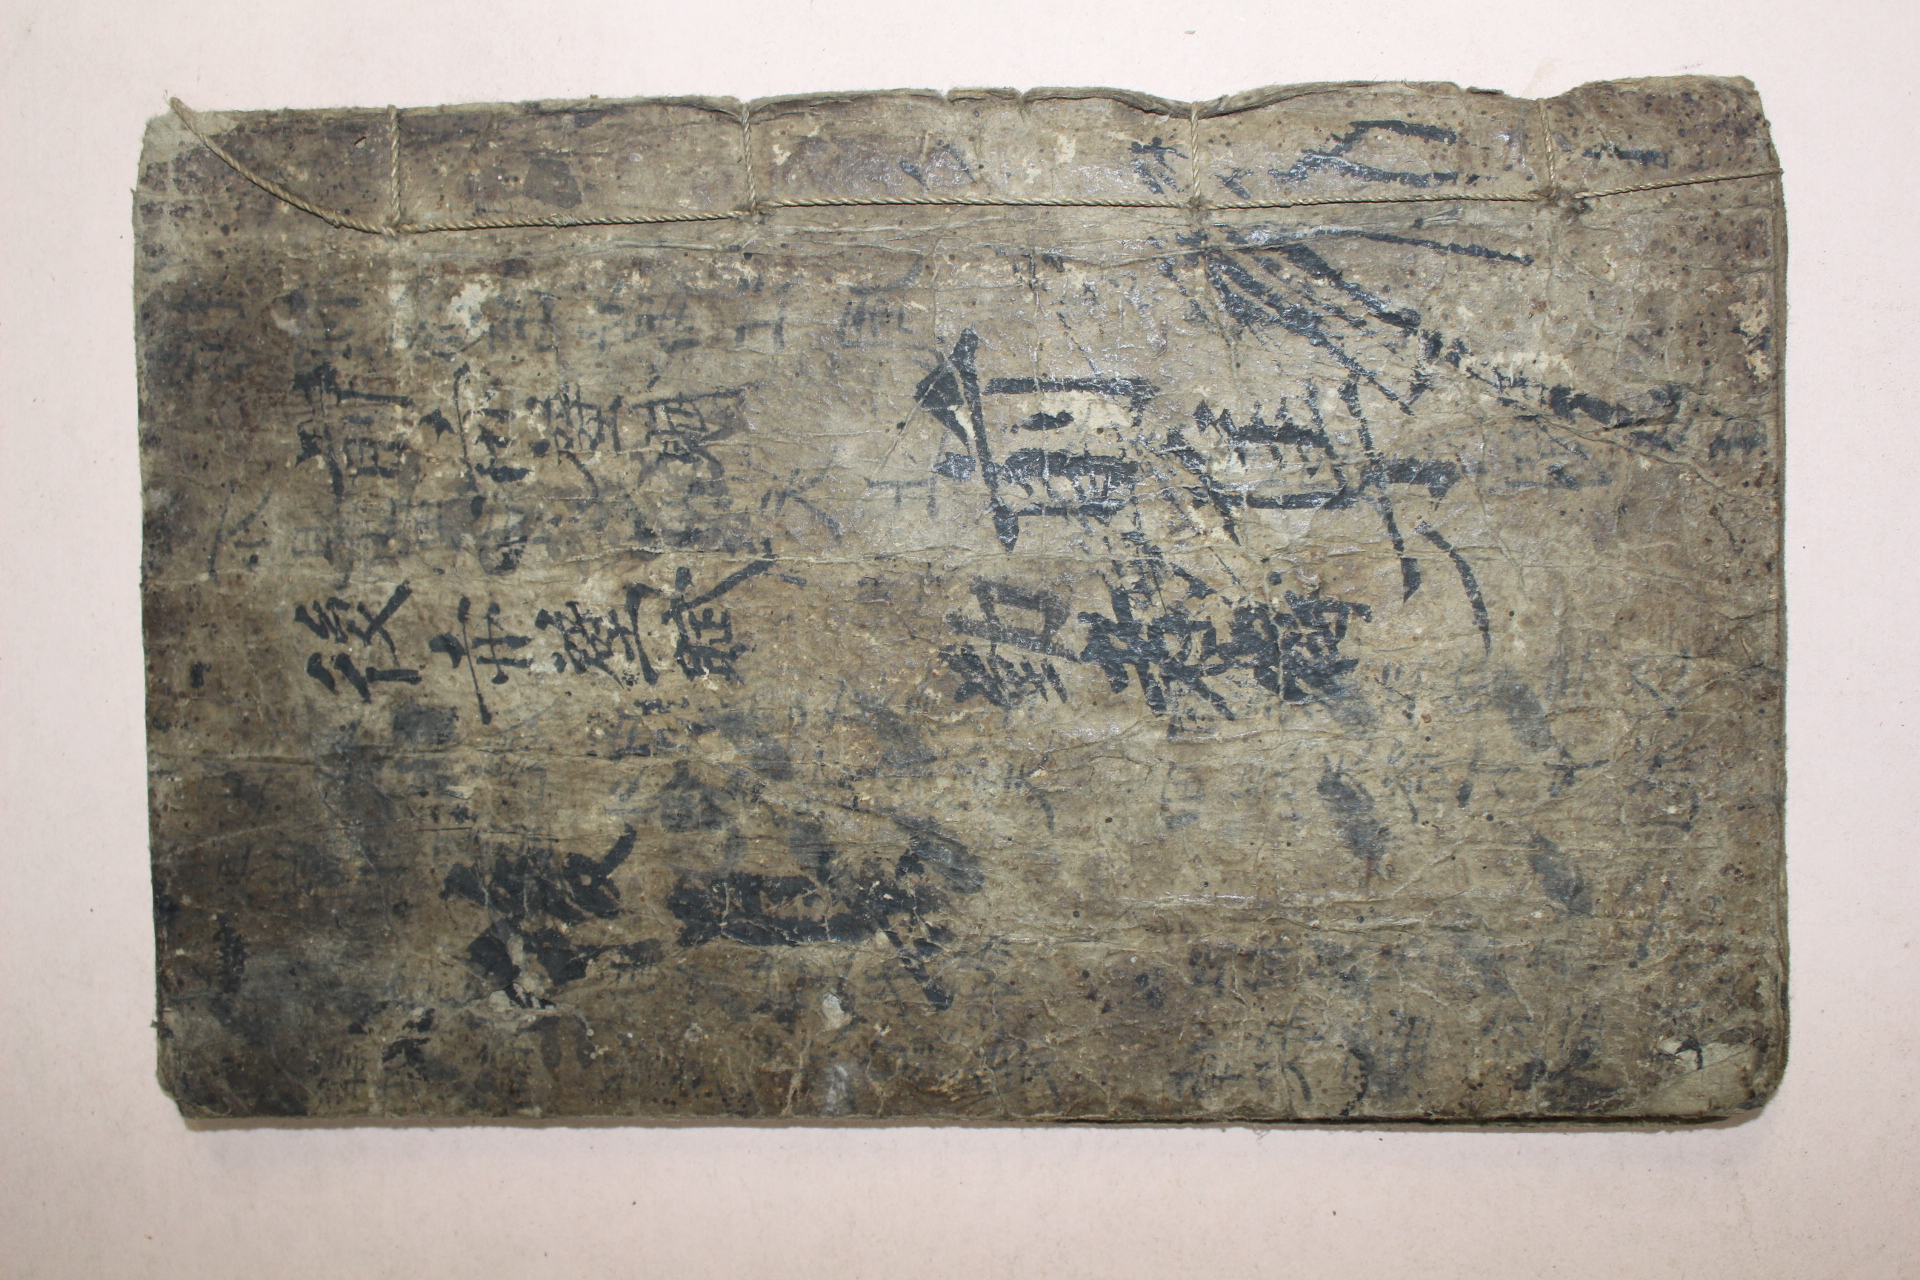 조선시대 필사본 전적벽부(前赤壁賦) 1책